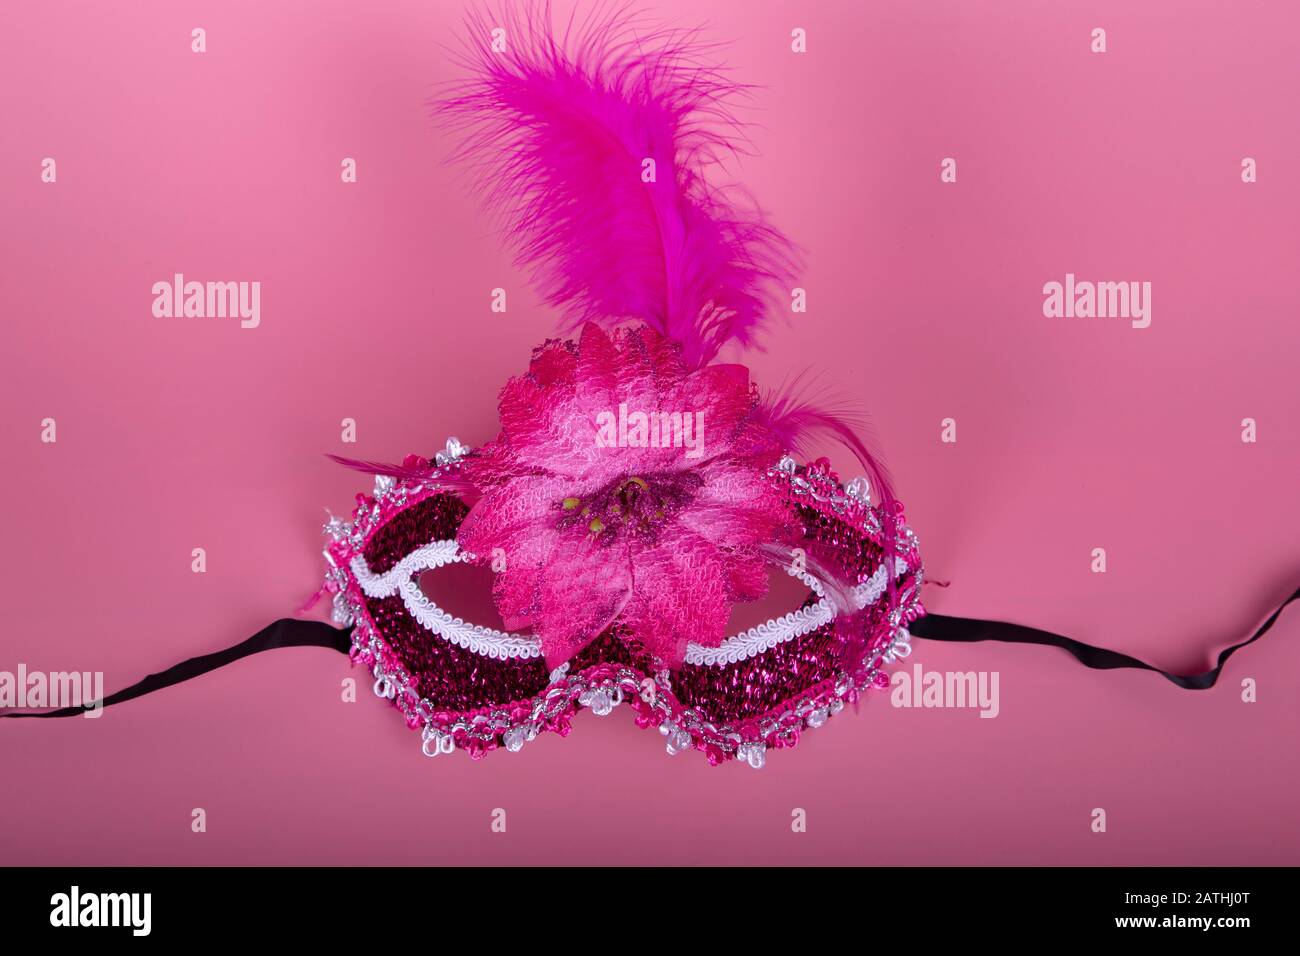 Elegante maschera veneziana di colore fucsia su sfondo rosa. Prendere dall'alto. Concetto di festa Foto Stock